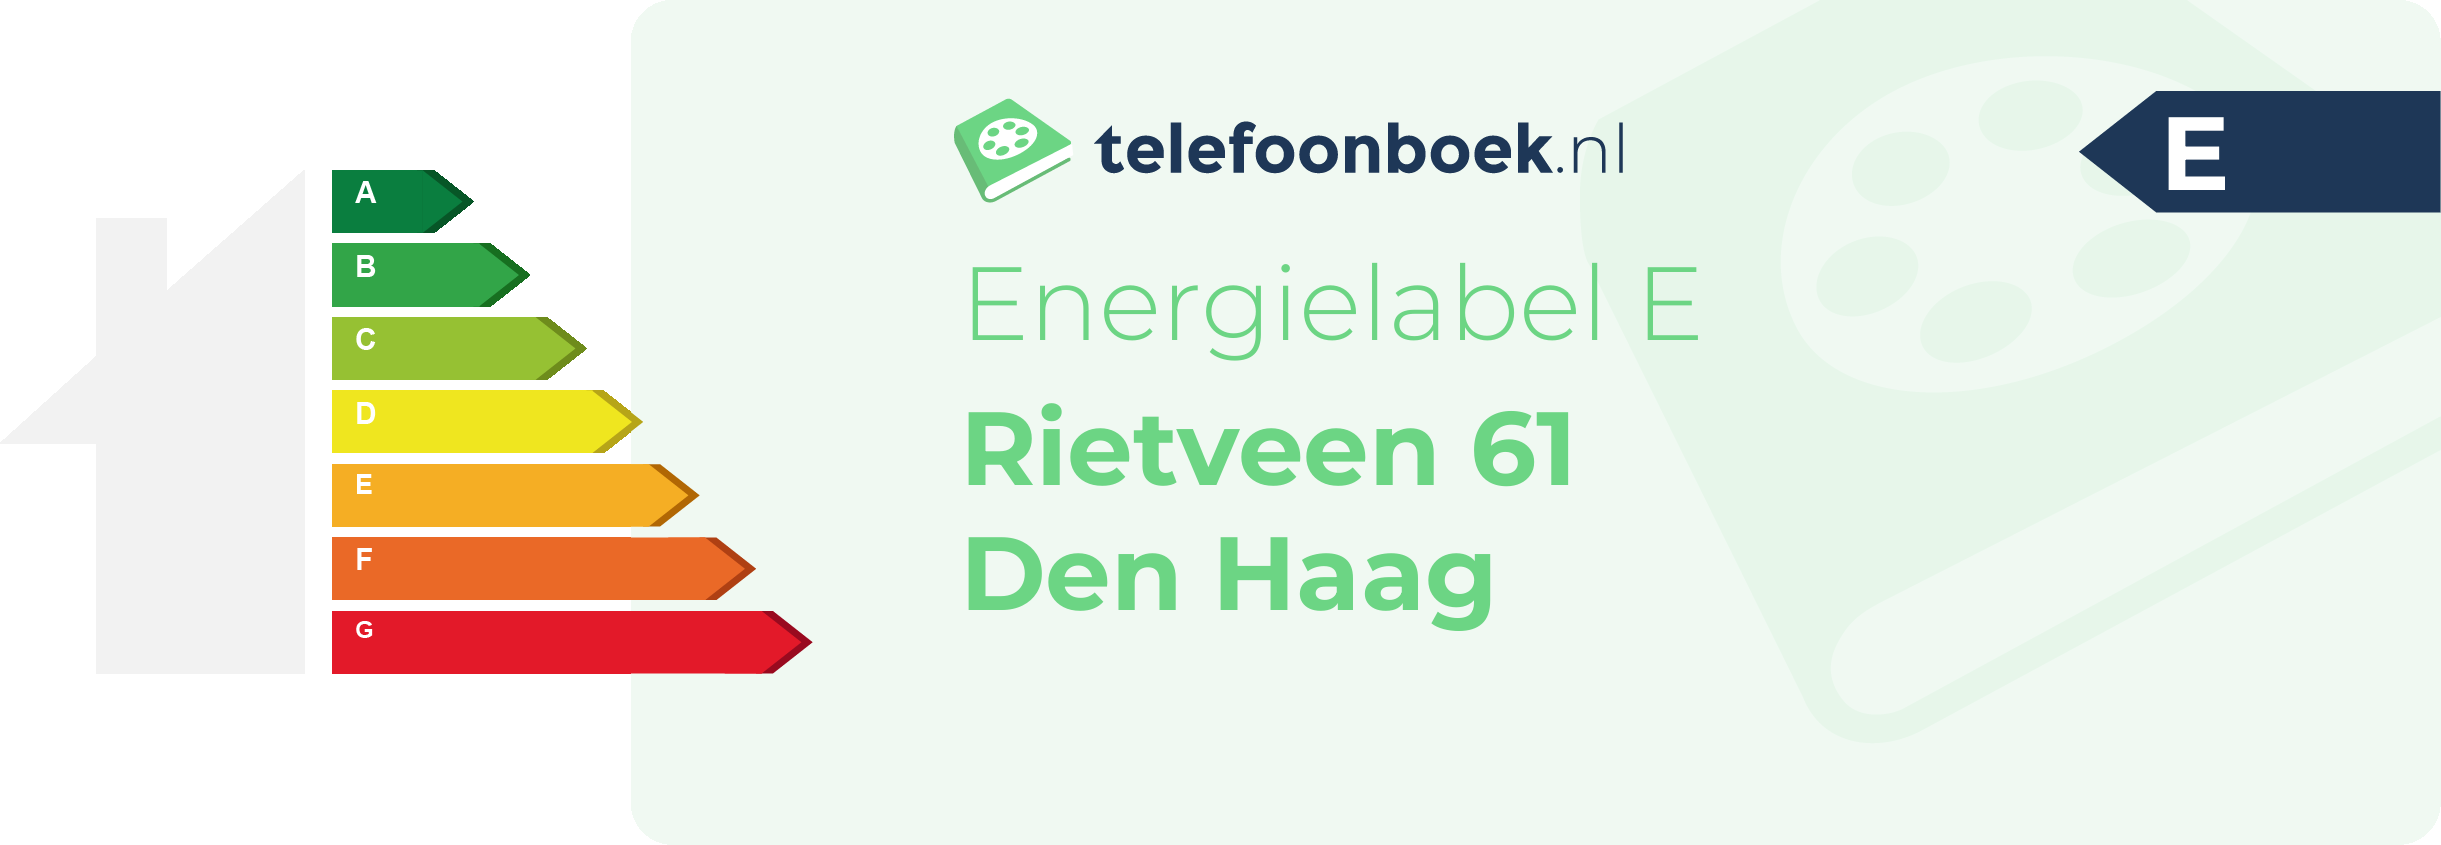 Energielabel Rietveen 61 Den Haag